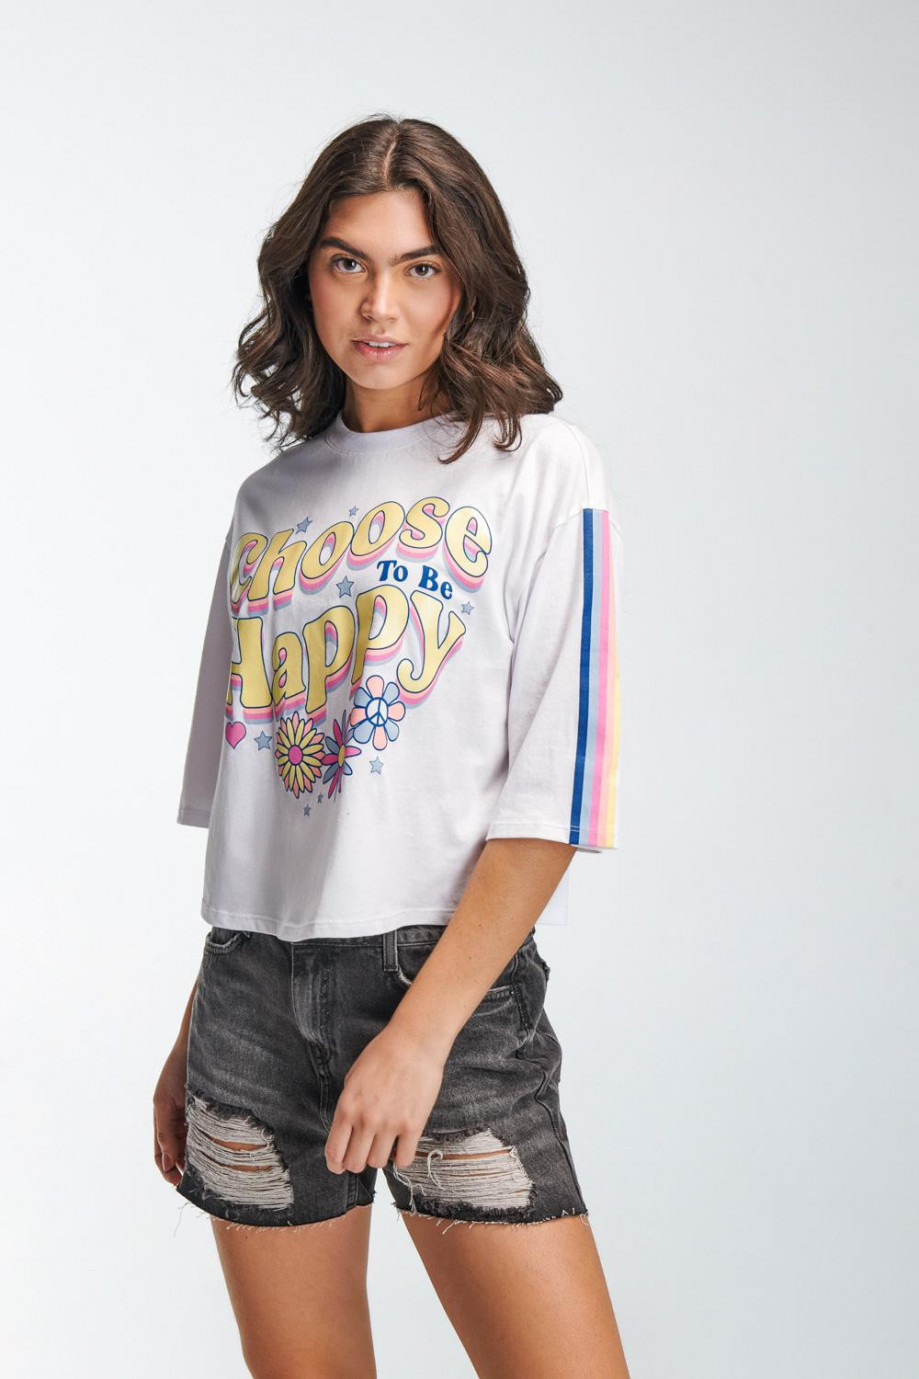 Camiseta unicolor manga corta con diseños coloridos estampados